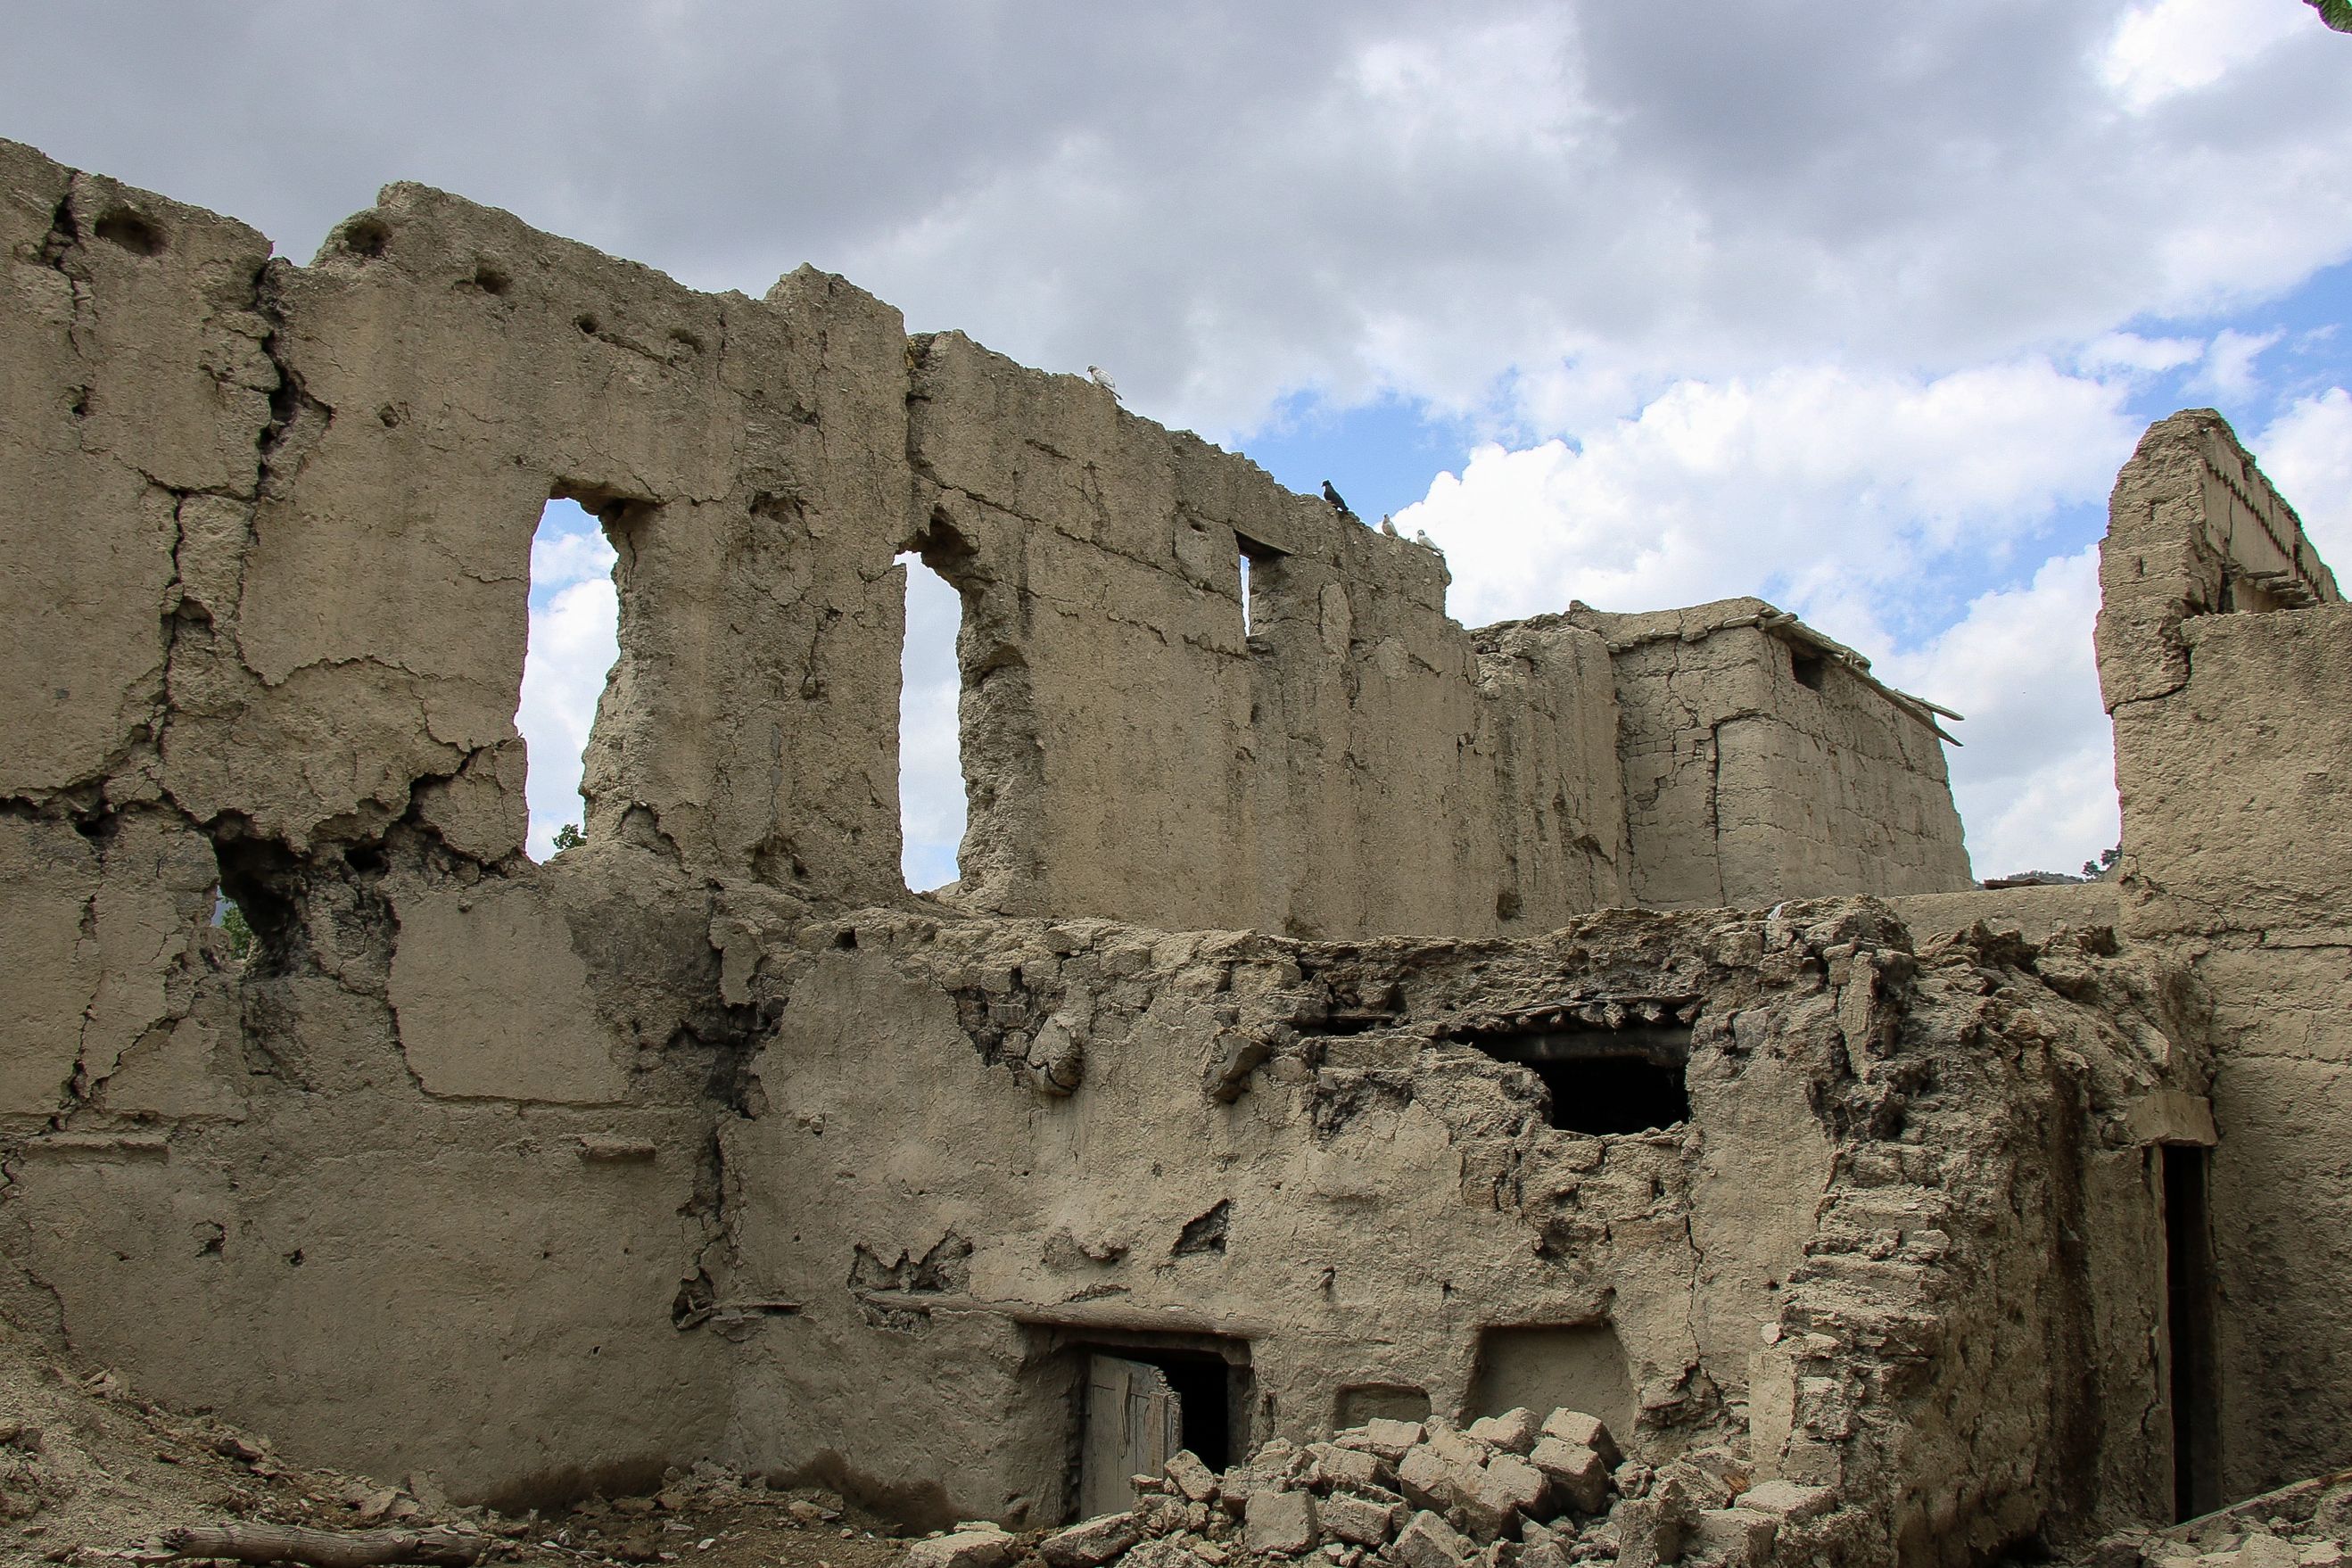 Earthquake in Eastern Afghanistan Injures 10 People